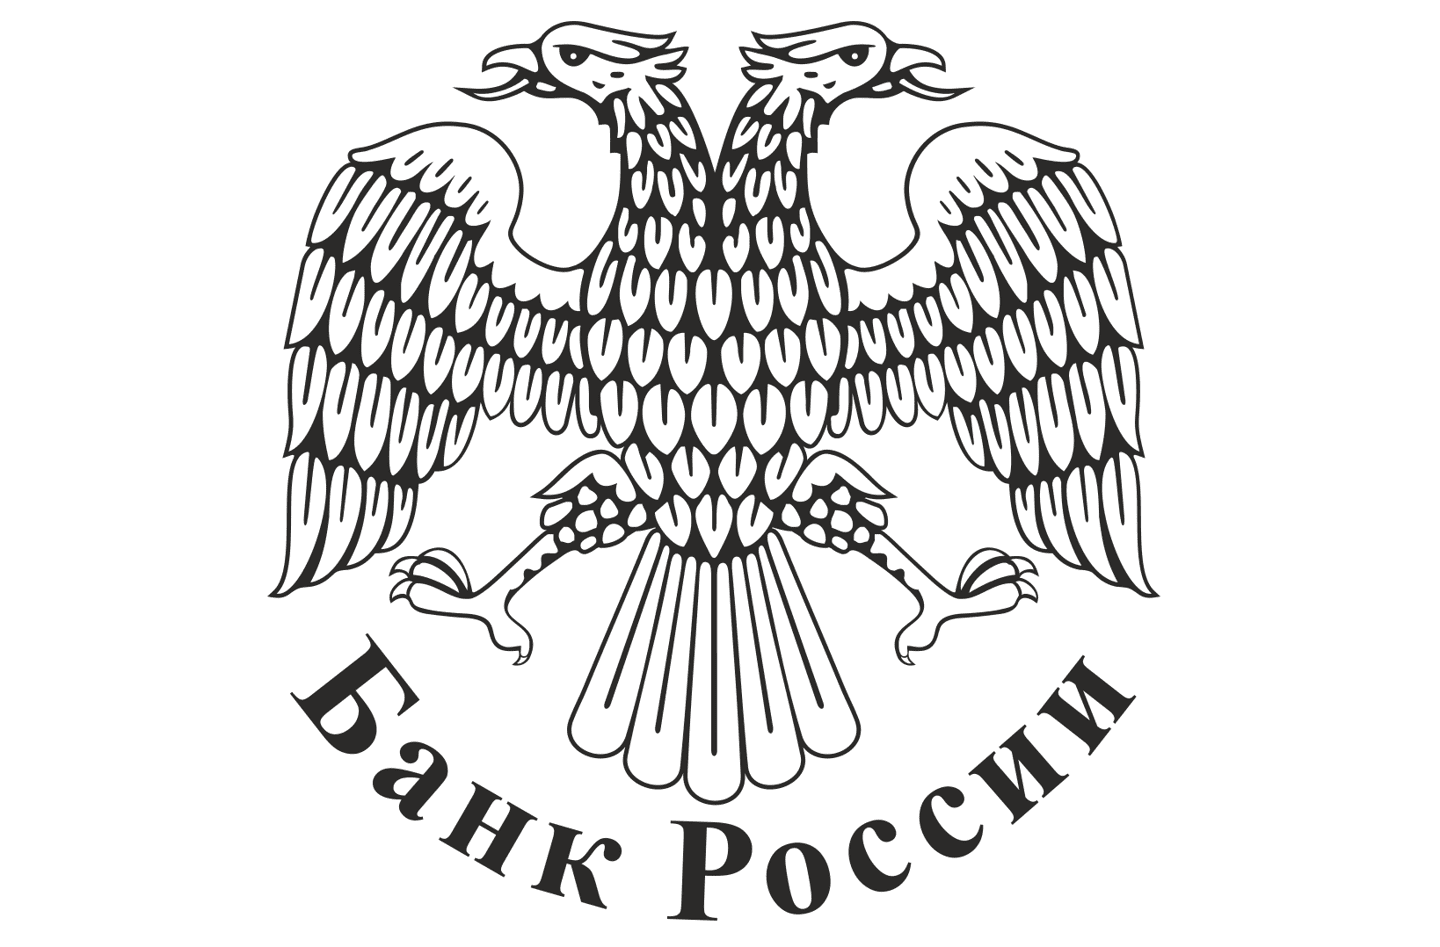 知情人士：俄罗斯央行考虑禁止对加密货币的所有投资 立场强硬